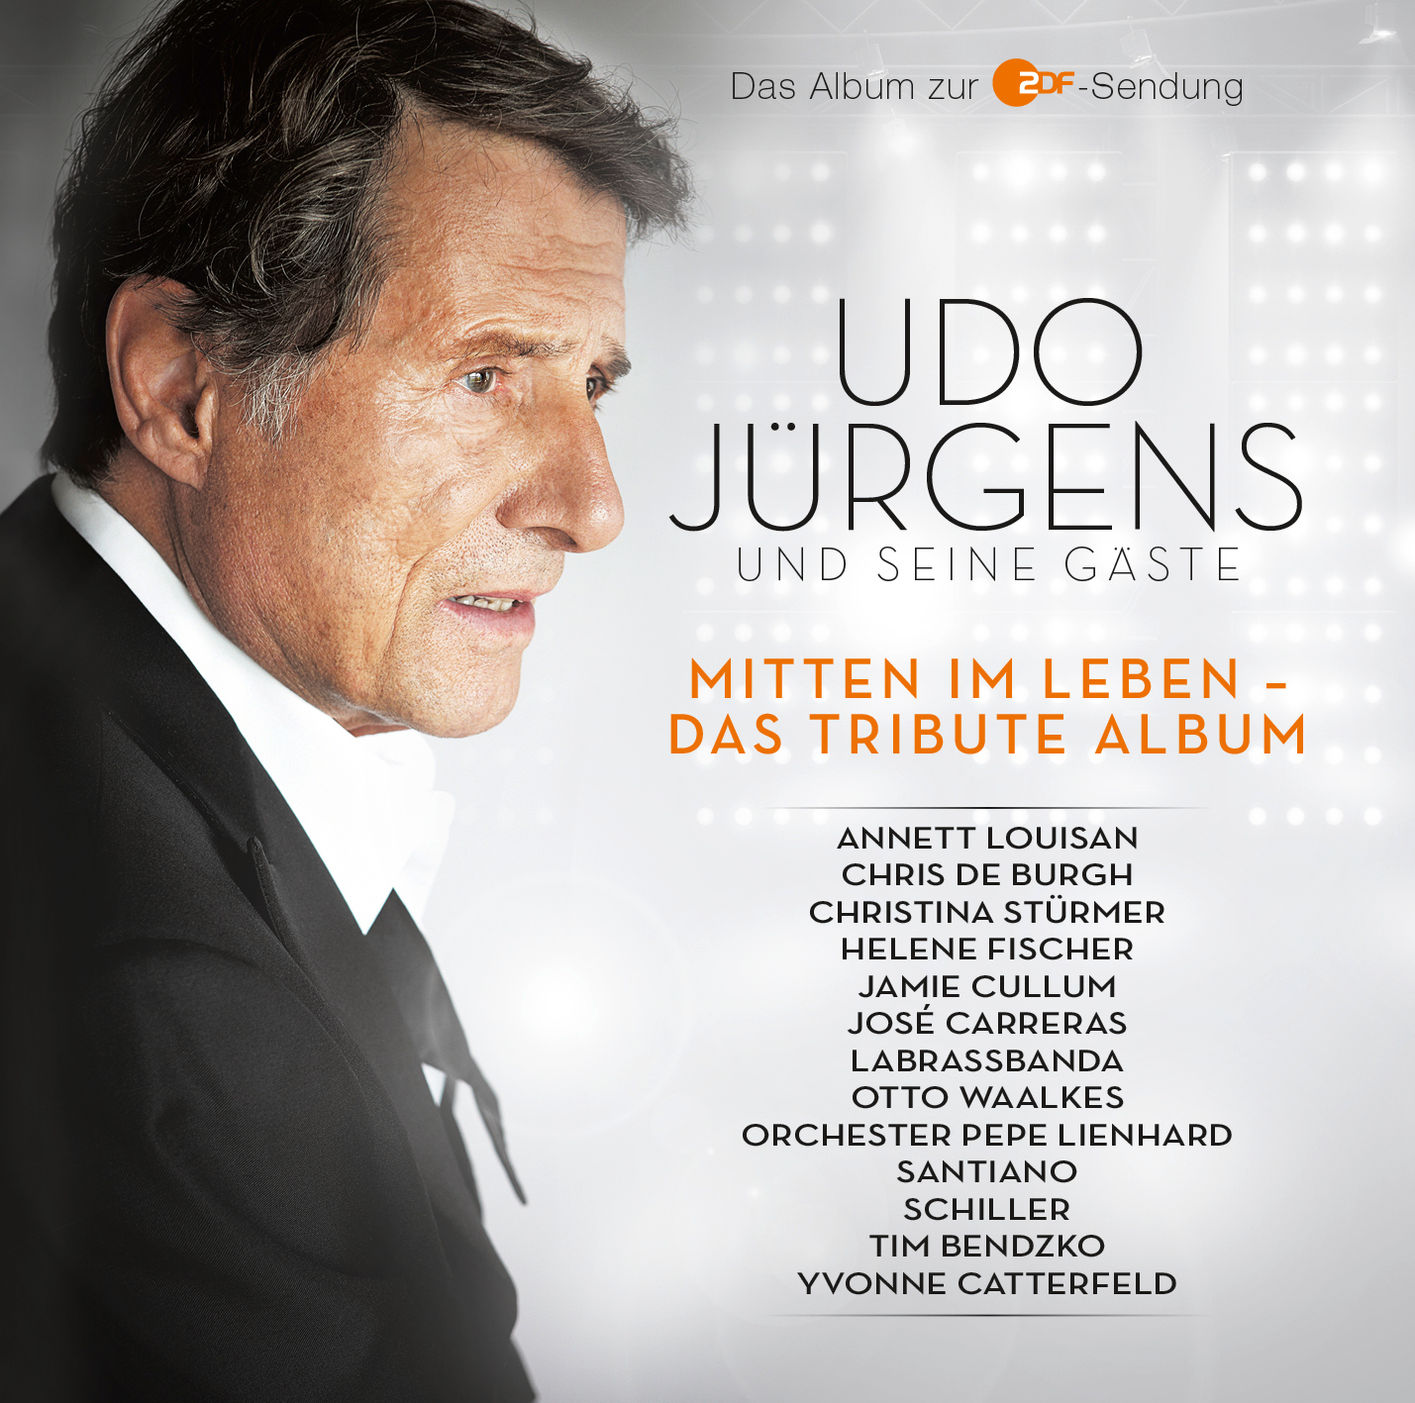 Udo Jürgens und seine Gäste - Mitten im Leben - Das Tribute Album von Udo &  seine Gäste Jürgens | Weltbild.at